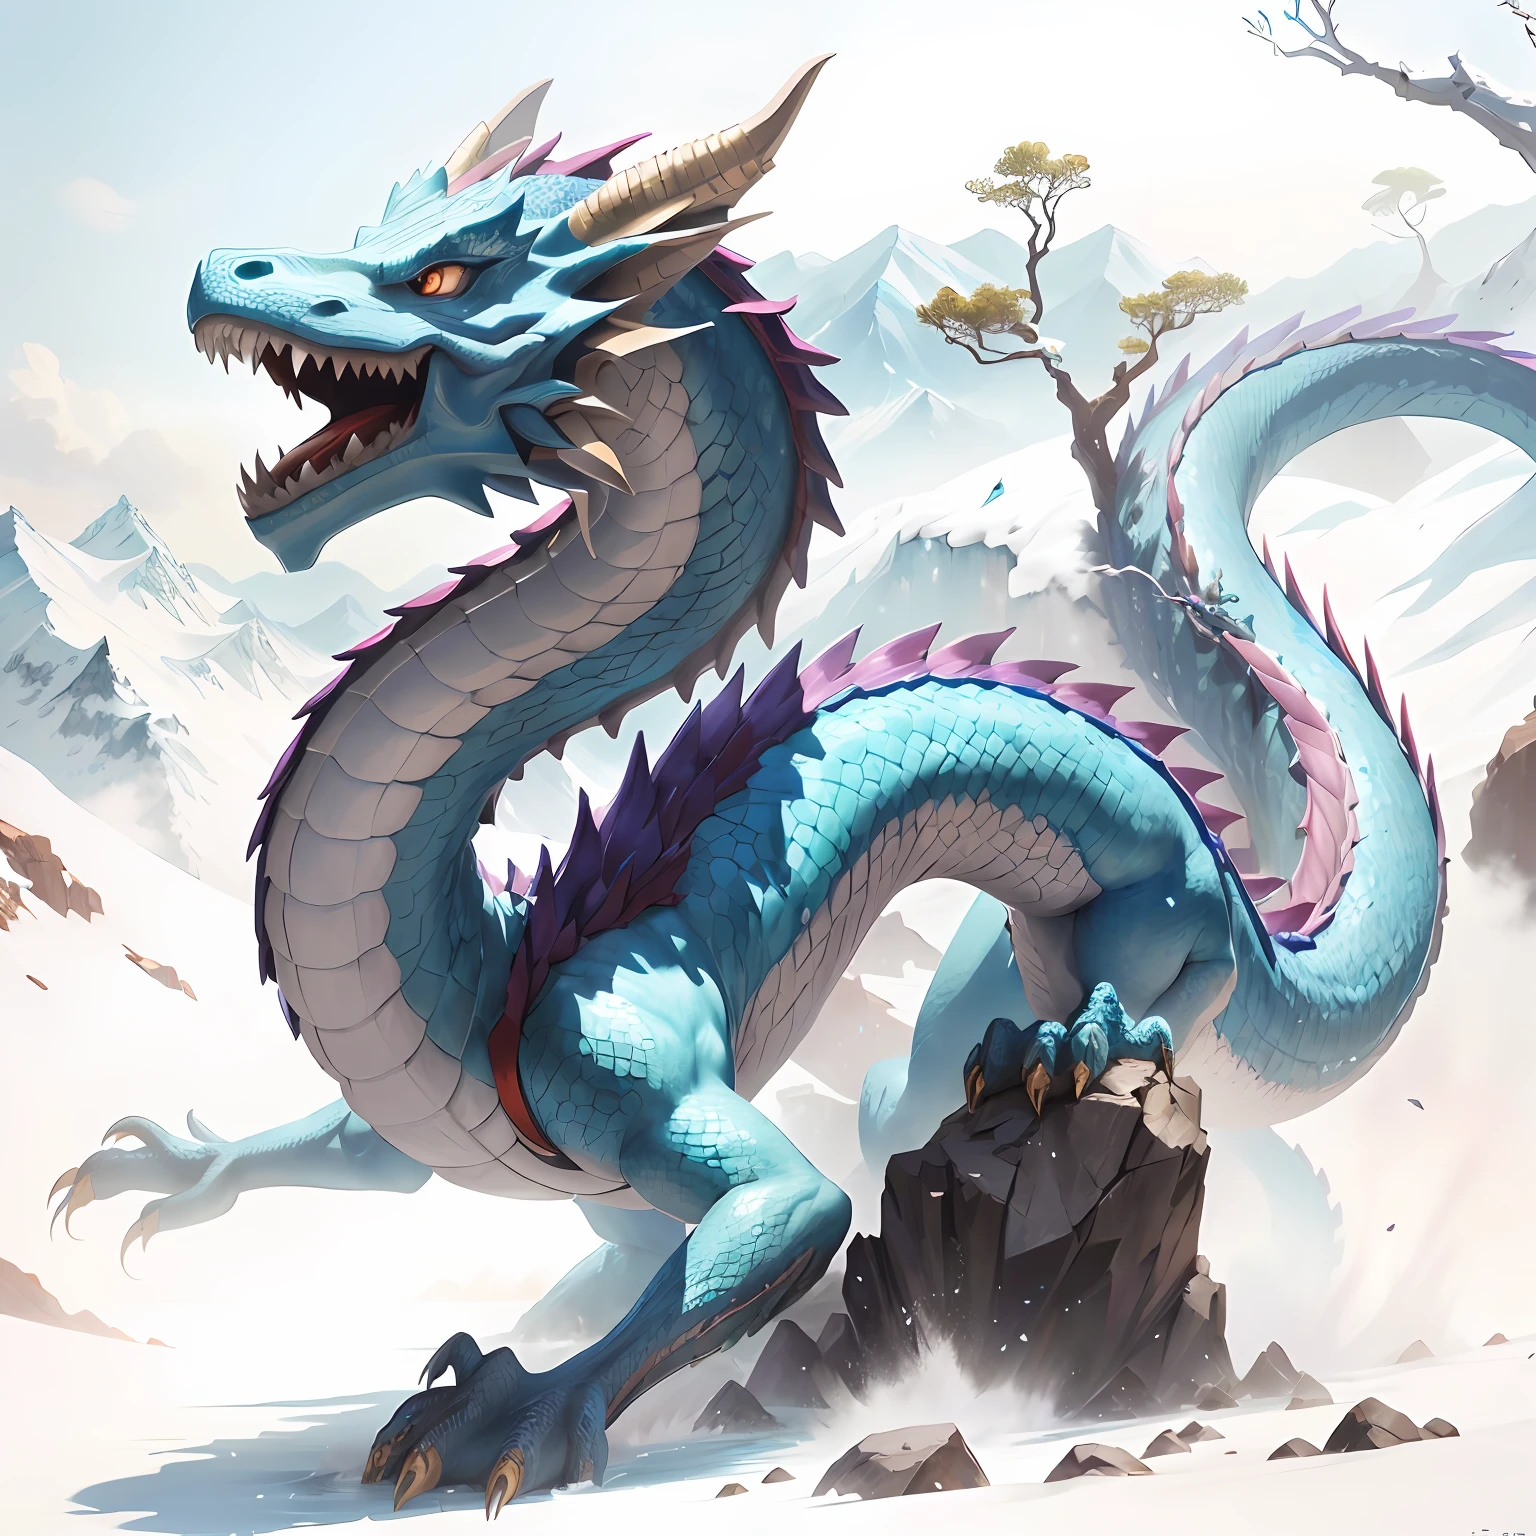 Il y a un dragon bleu debout sur le rocher, fantaisie de dragon chinois cyan, Dragon bleu, Frost dragon, art conceptuel du dragon chinois, dragon écailleux bleu, dragon Art, Legendary dragon, d&dragon d&#39;art de commande d, Dragon chinois lisse, dragon, dragon épique, Dragon d&#39;eau, long dragon, oil painting de dragon, buvait, Un majestueux，un dragon， coloré， sommets des montagnes， cascadeur， Baiyun， chef-d&#39;œuvre， La meilleure qualité au mieux， Le est très détaillé， finement détaillé， defcial art， Fond d&#39;écran Unité 8k， 4K，8k，UHd， très détaillé， bse brouillerry， se brouillerry_arrière-plan， se brouillerry_premier plan，profondeur_de_Champ，mouvement_se brouiller，（de manière réaliste，photo-réaliste：1），Le dragon d&#39;or，écailles bleues， --auto